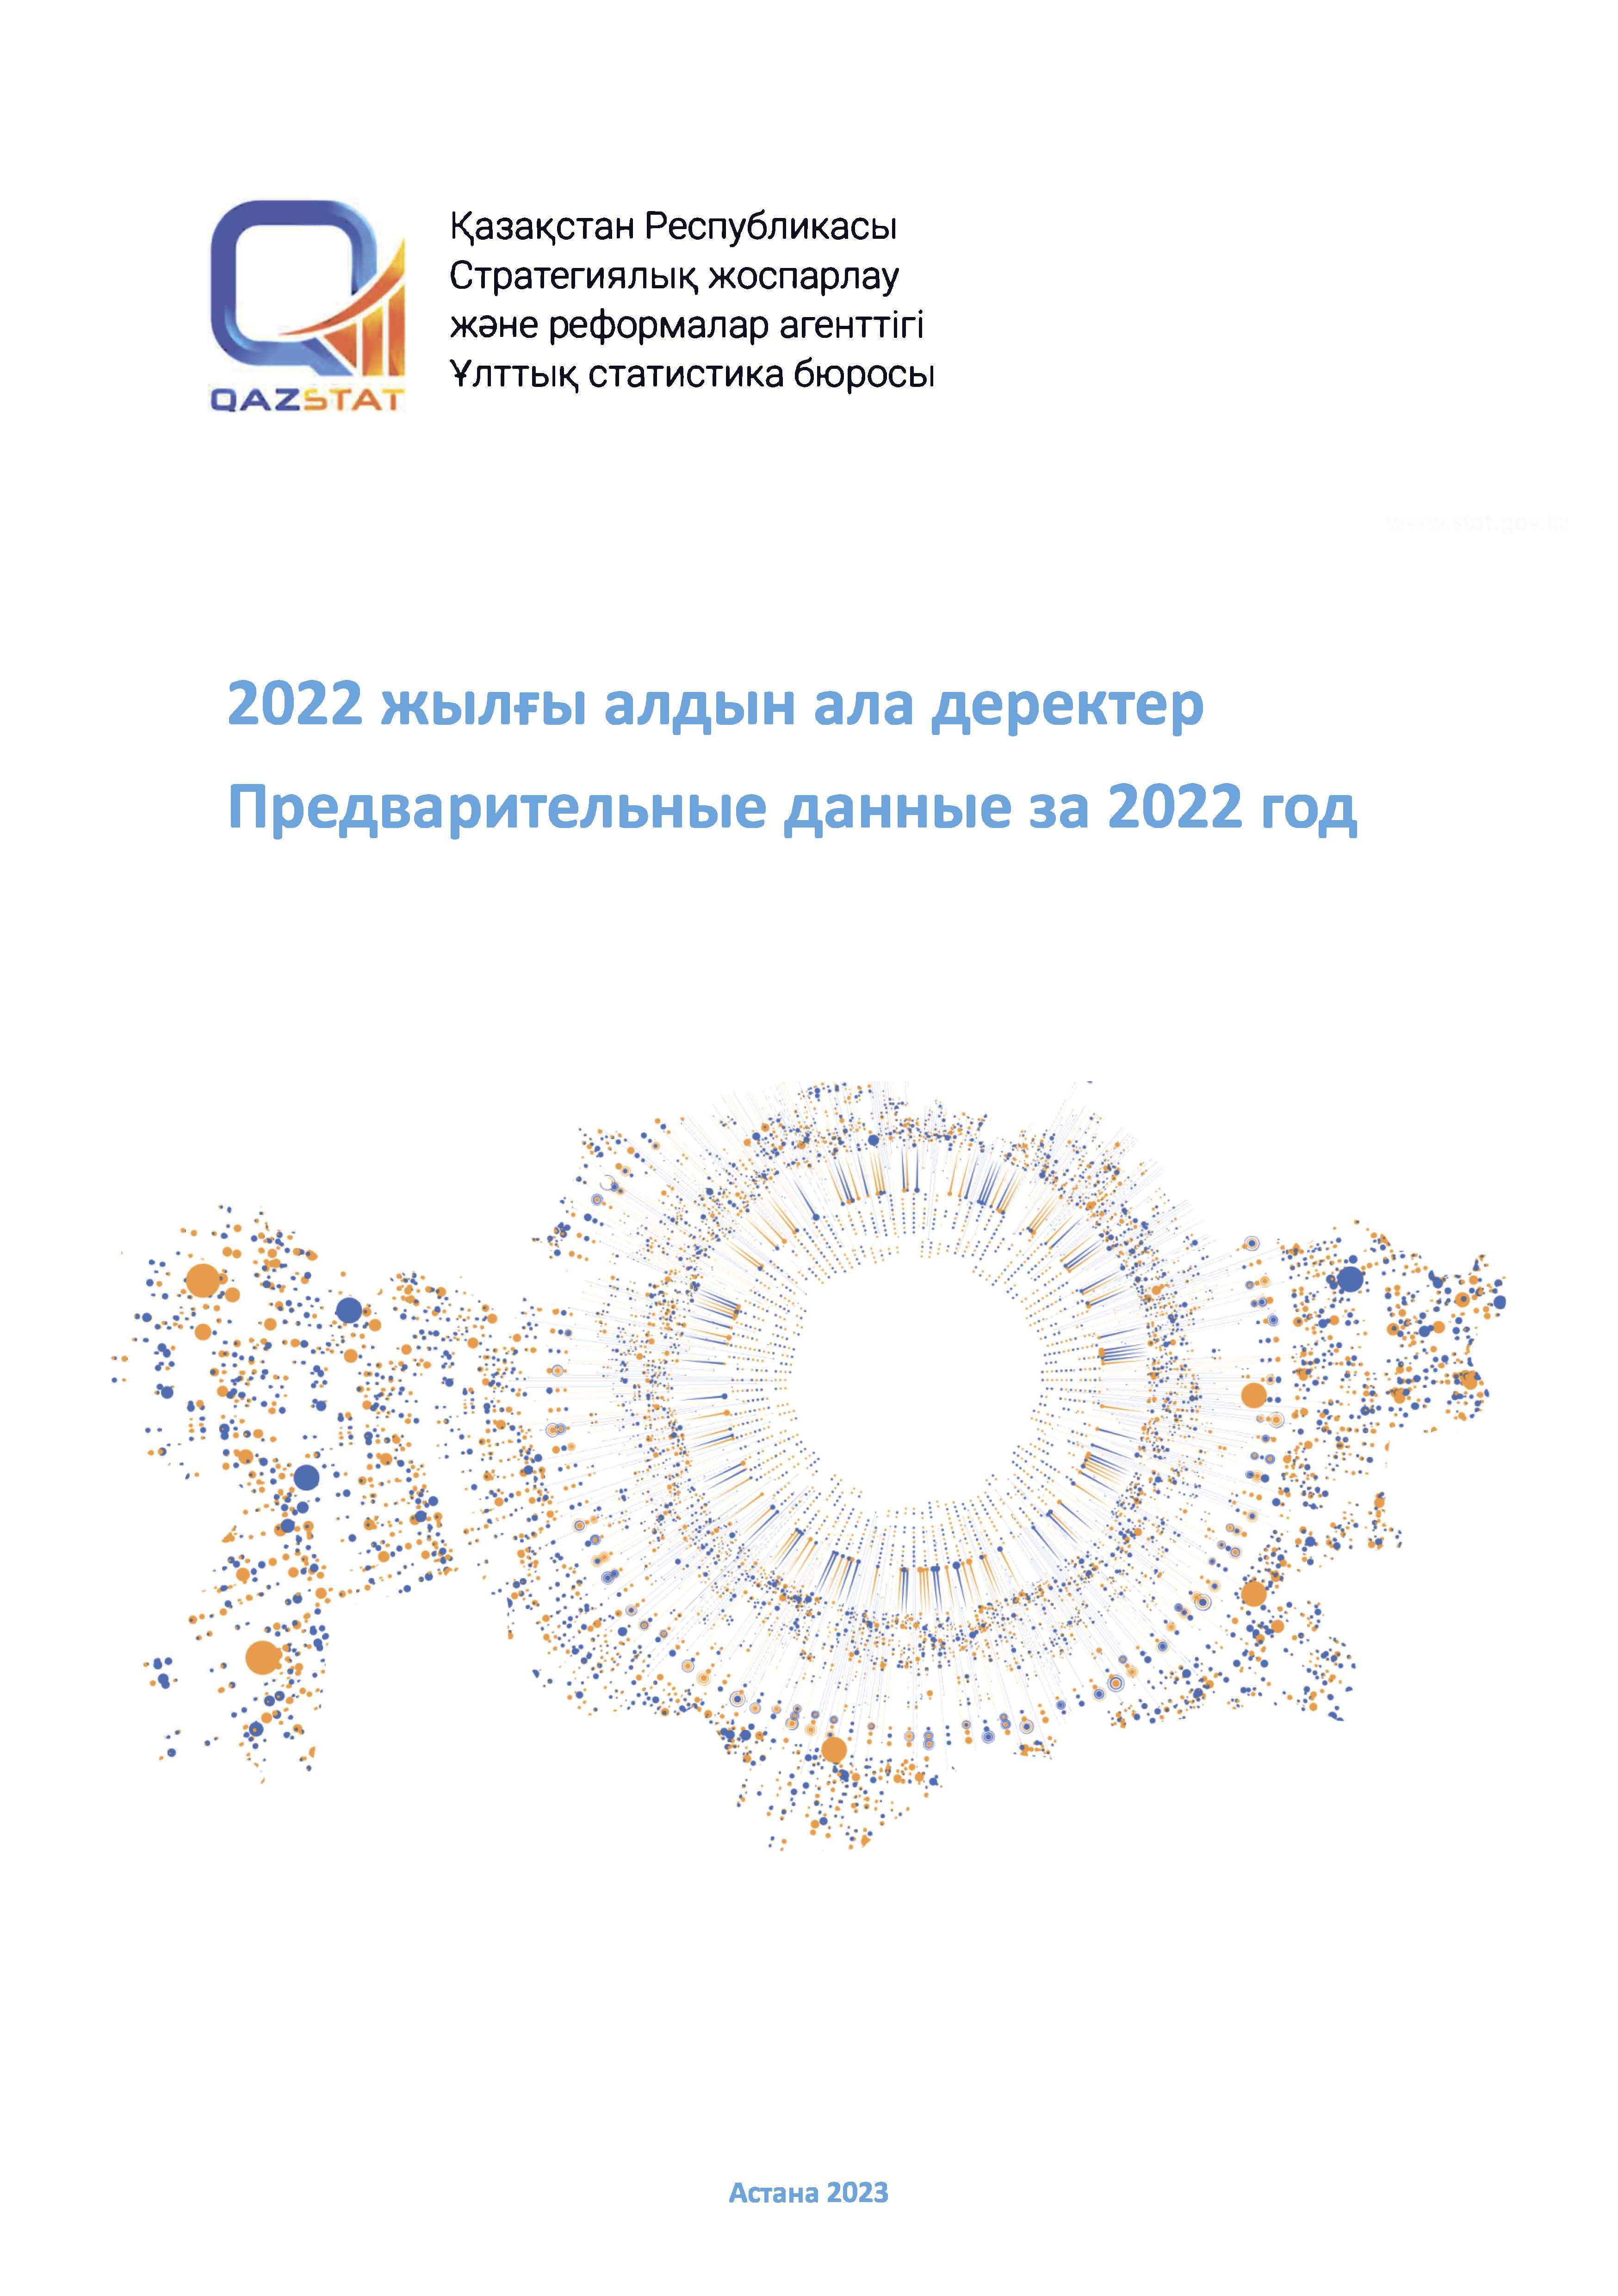 Краткий статистический ежегодник (предварительные данные за 2022 год)